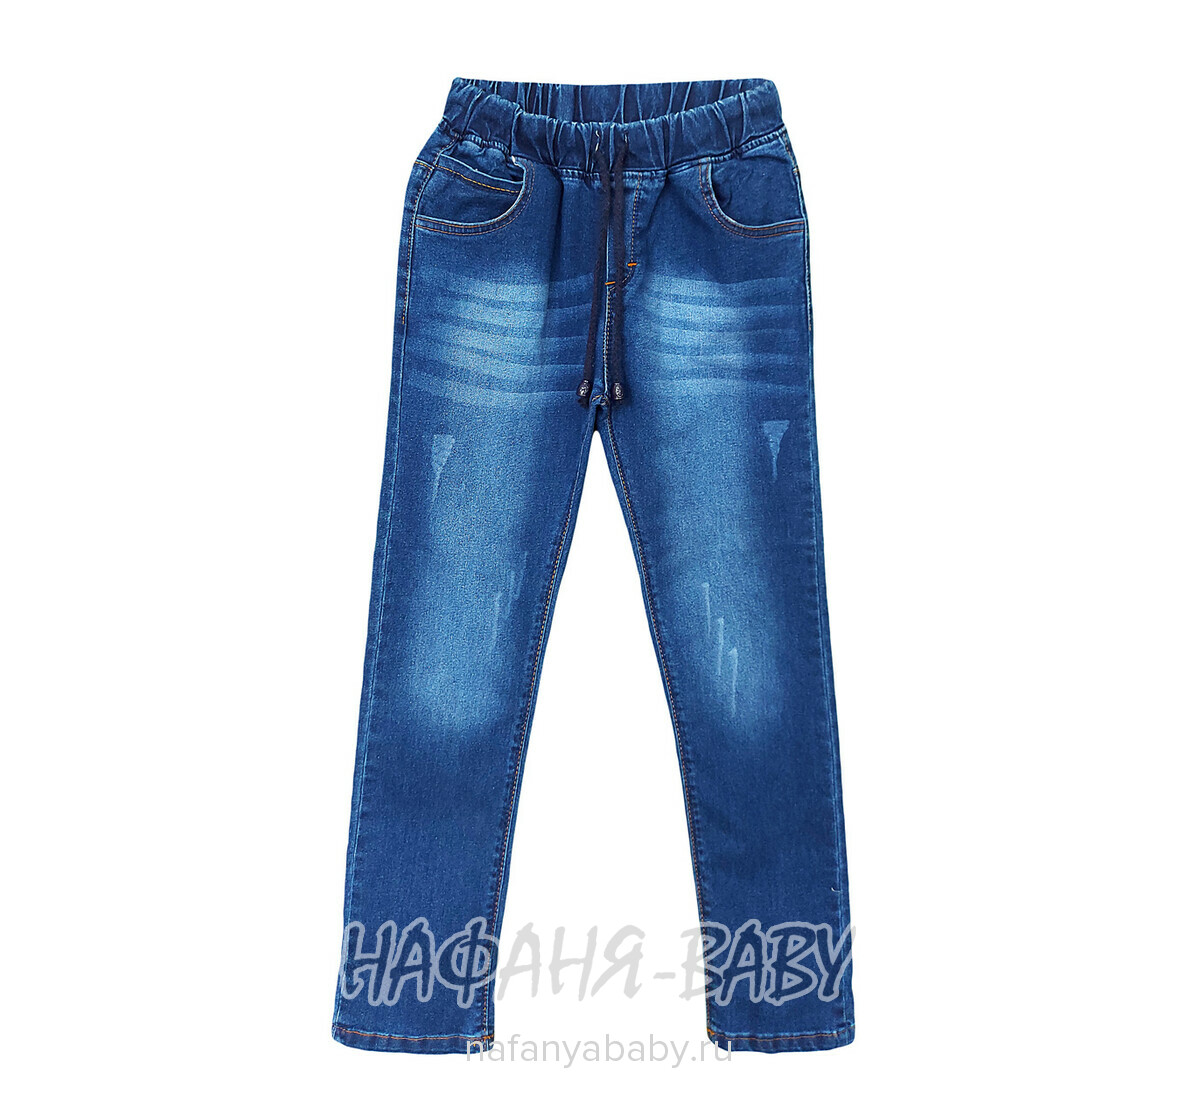 Подростковые джинсы TATI Jeans арт: 7489, 9-12 лет, цвет синий, оптом Турция